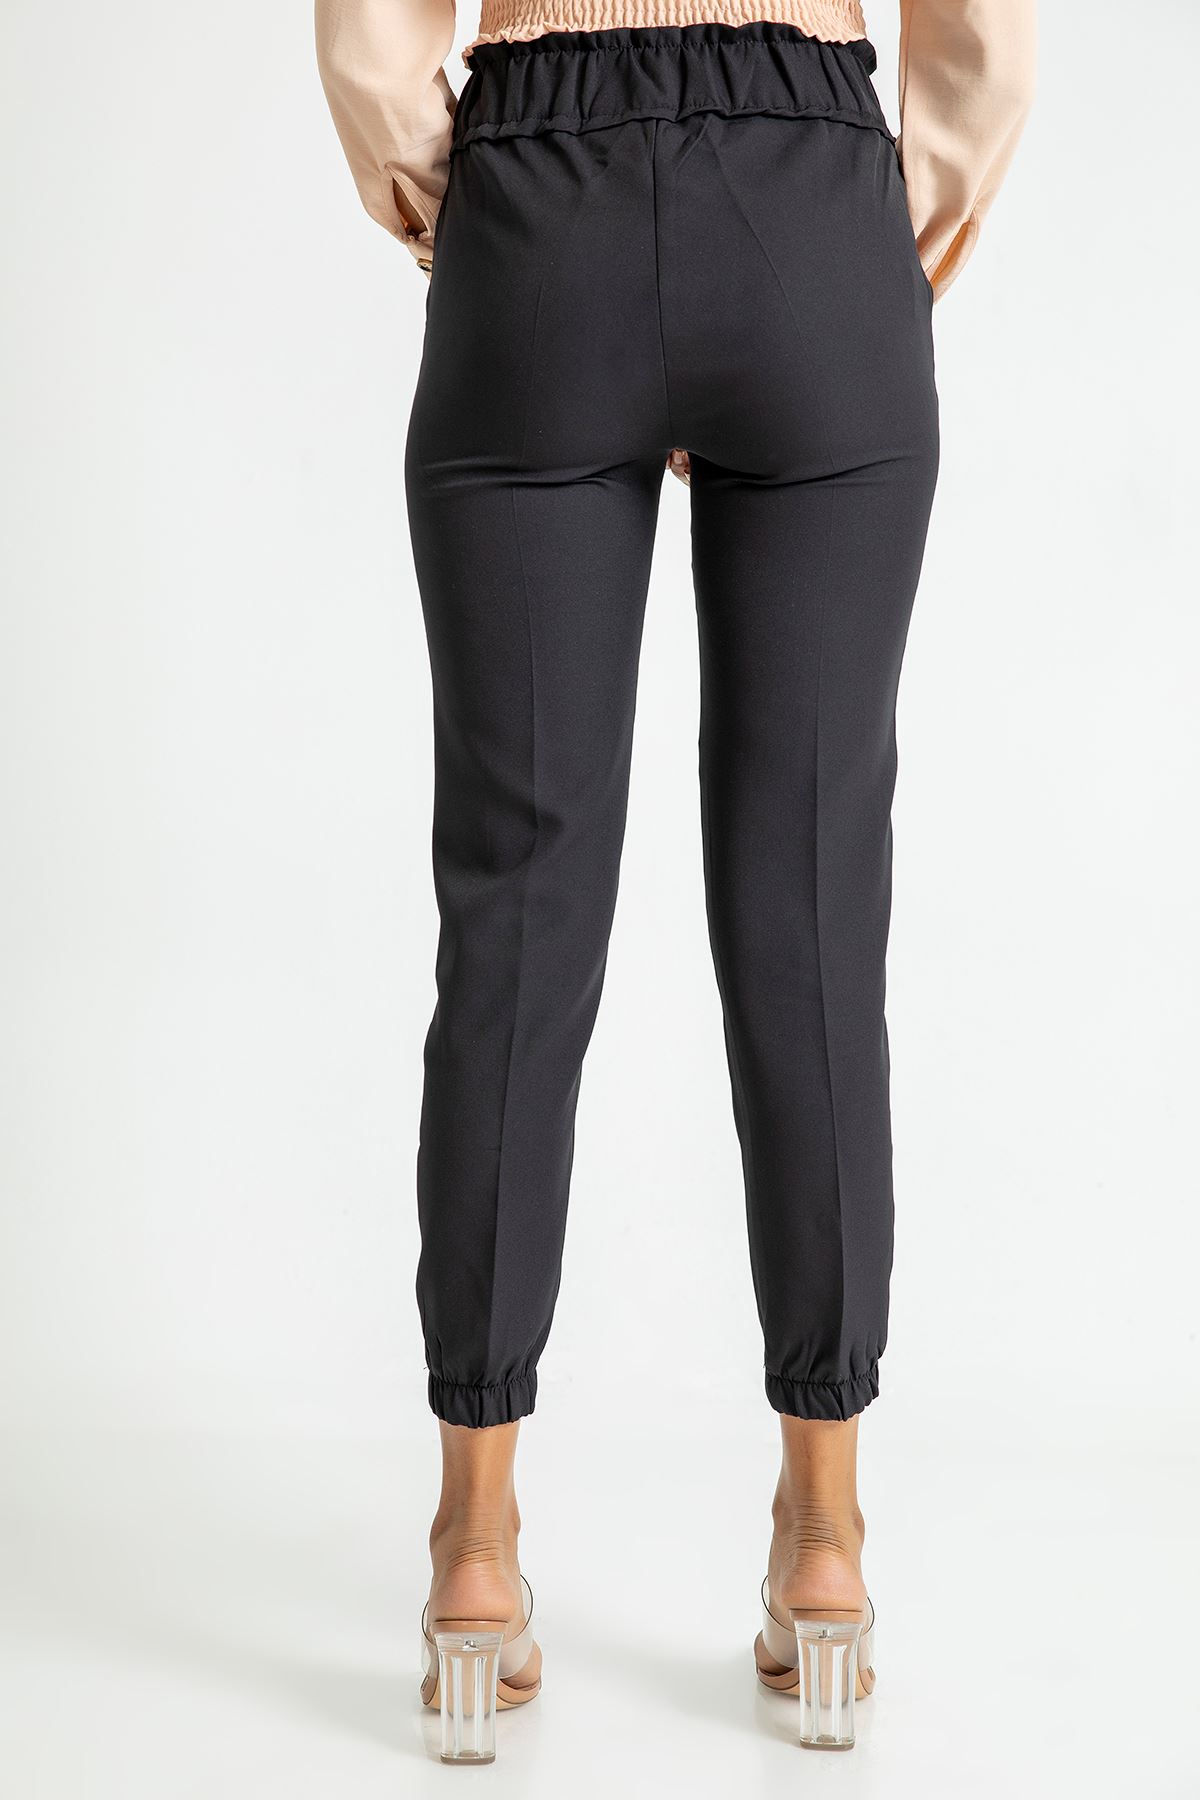 Atlas Fabric Ankle Length Elastic Waist Jogger Women'S Trouser - Black